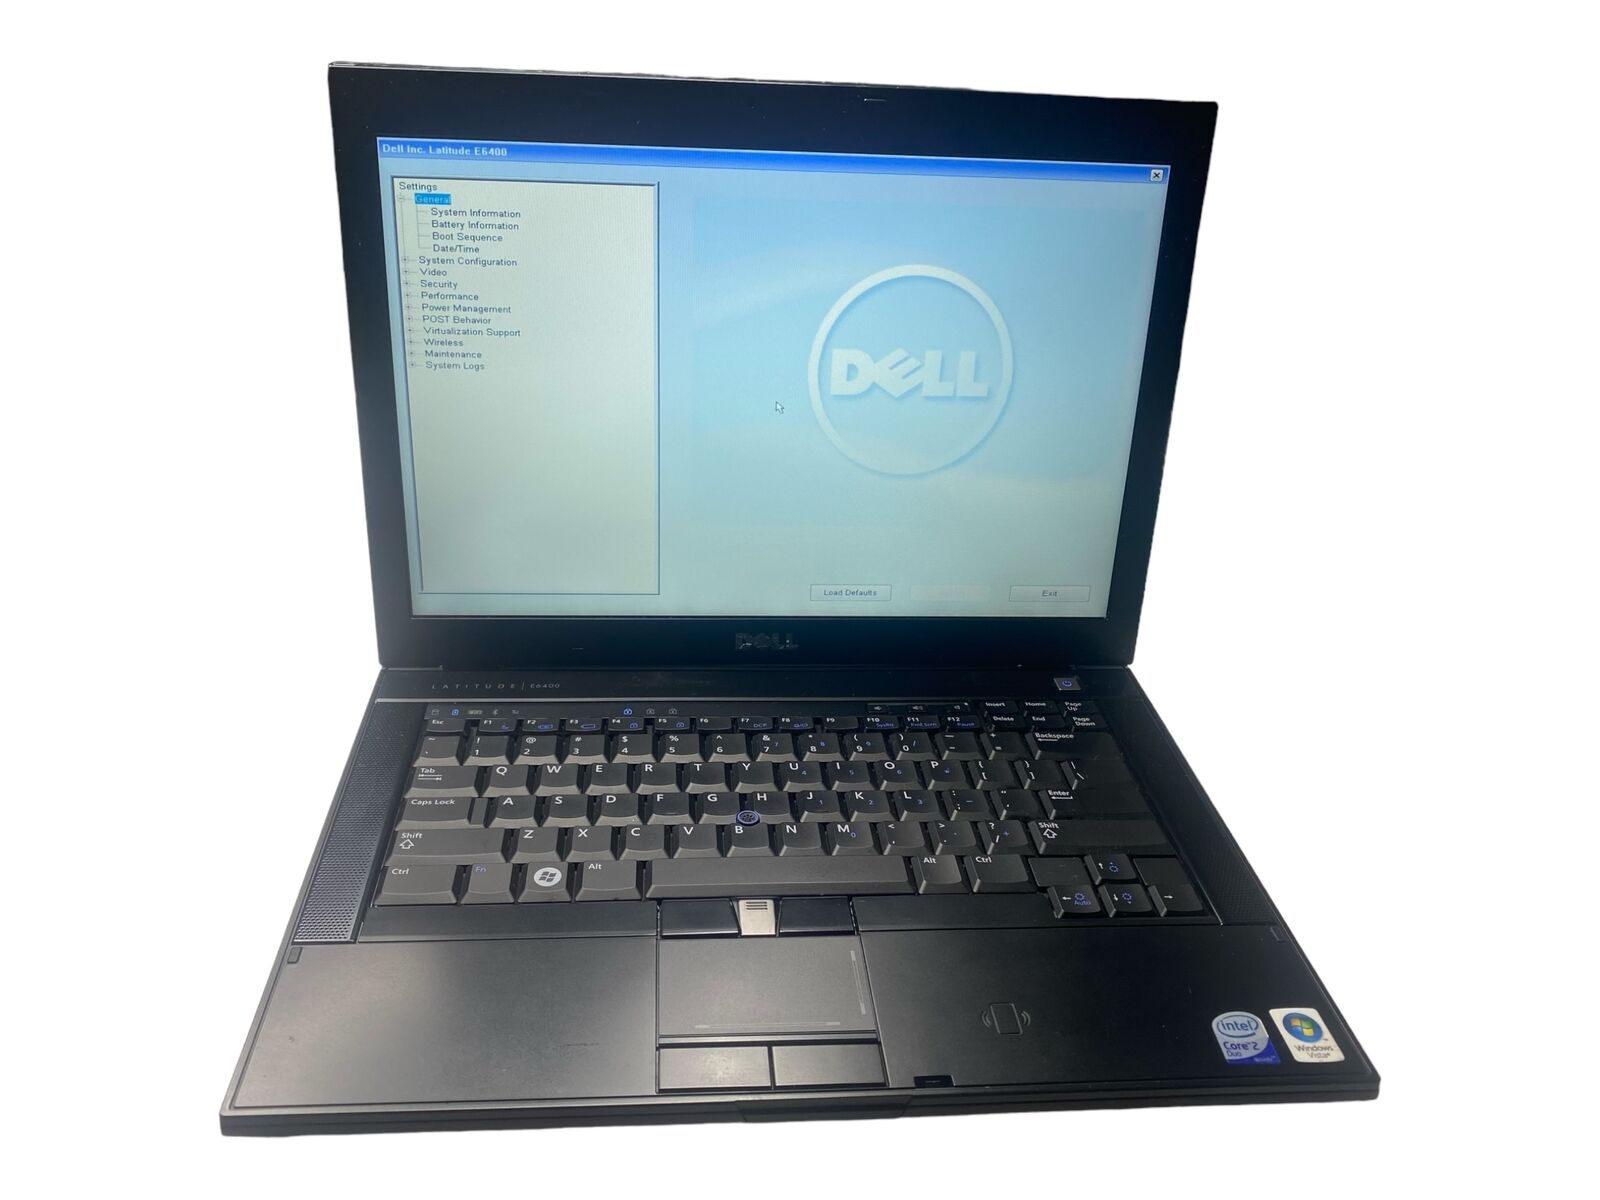 Dell Latitude E6400 Intel Core 2 Duo P8400 2.26GHz 4GB NO SSD OS Laptop PC